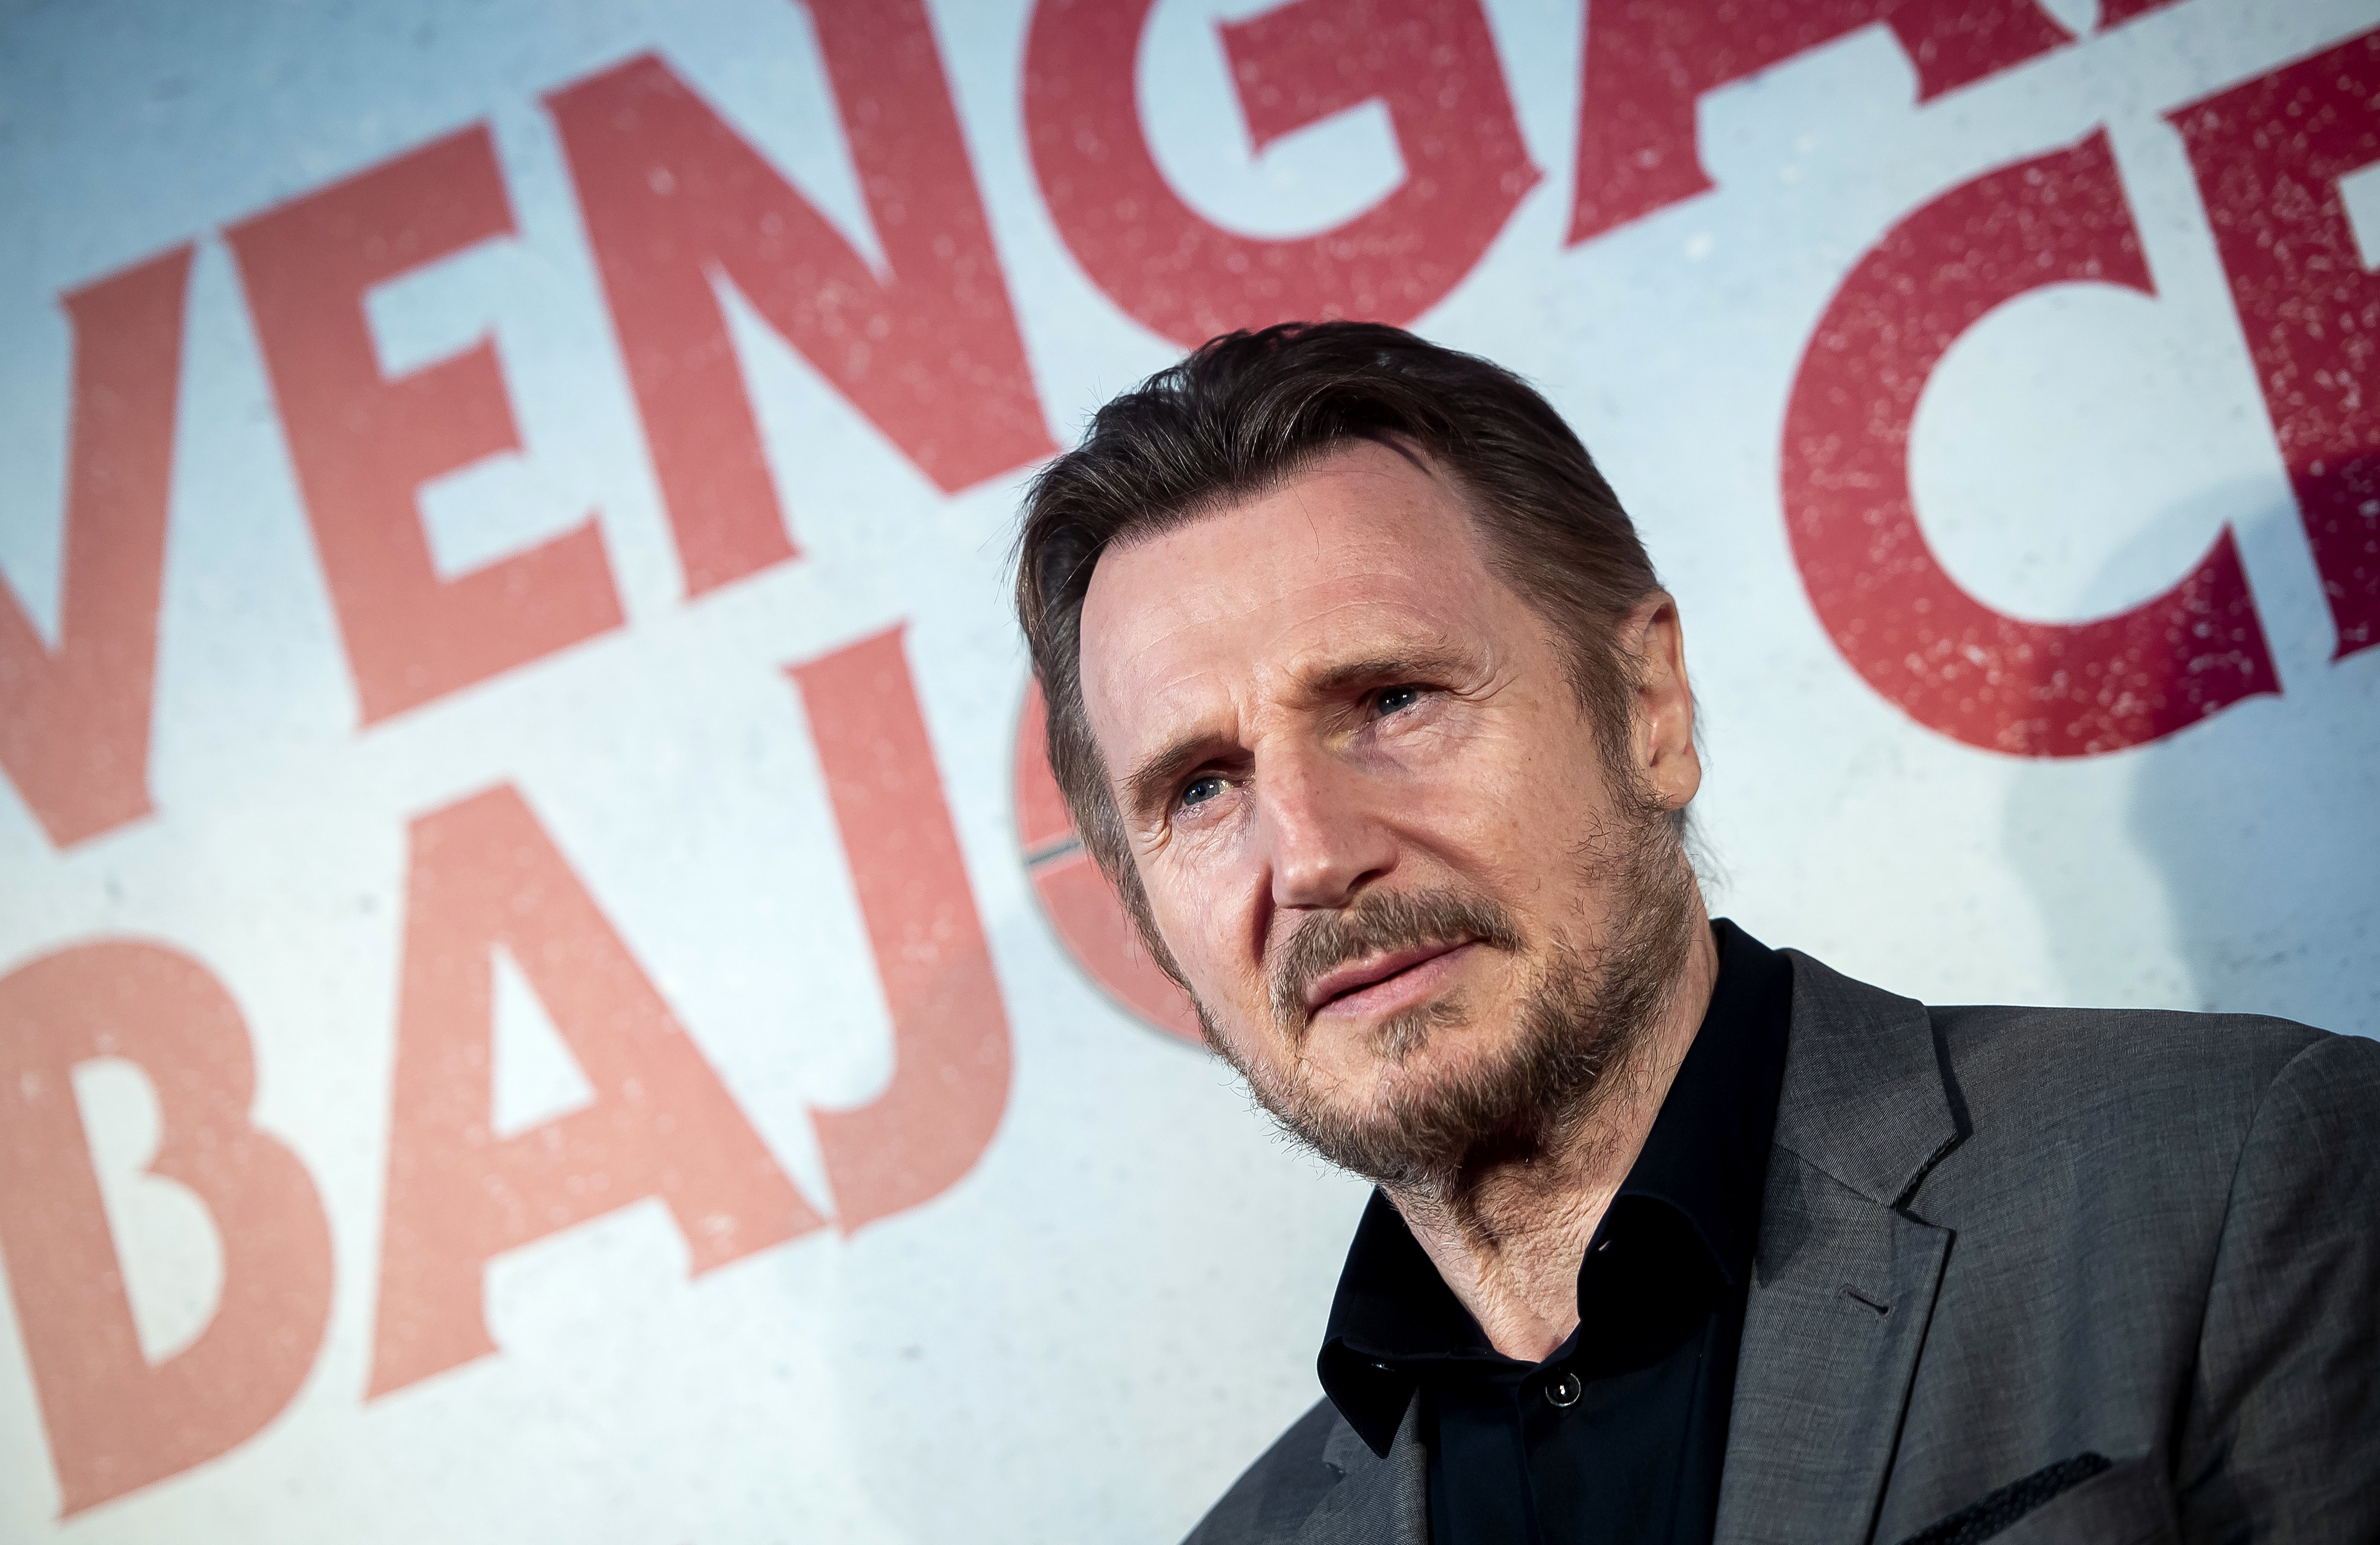 Liam Neeson durante el estreno en Madrid de "Venganza Bajo Cero" el 15 de julio de 2019 en Madrid, España. | Foto: Getty Images